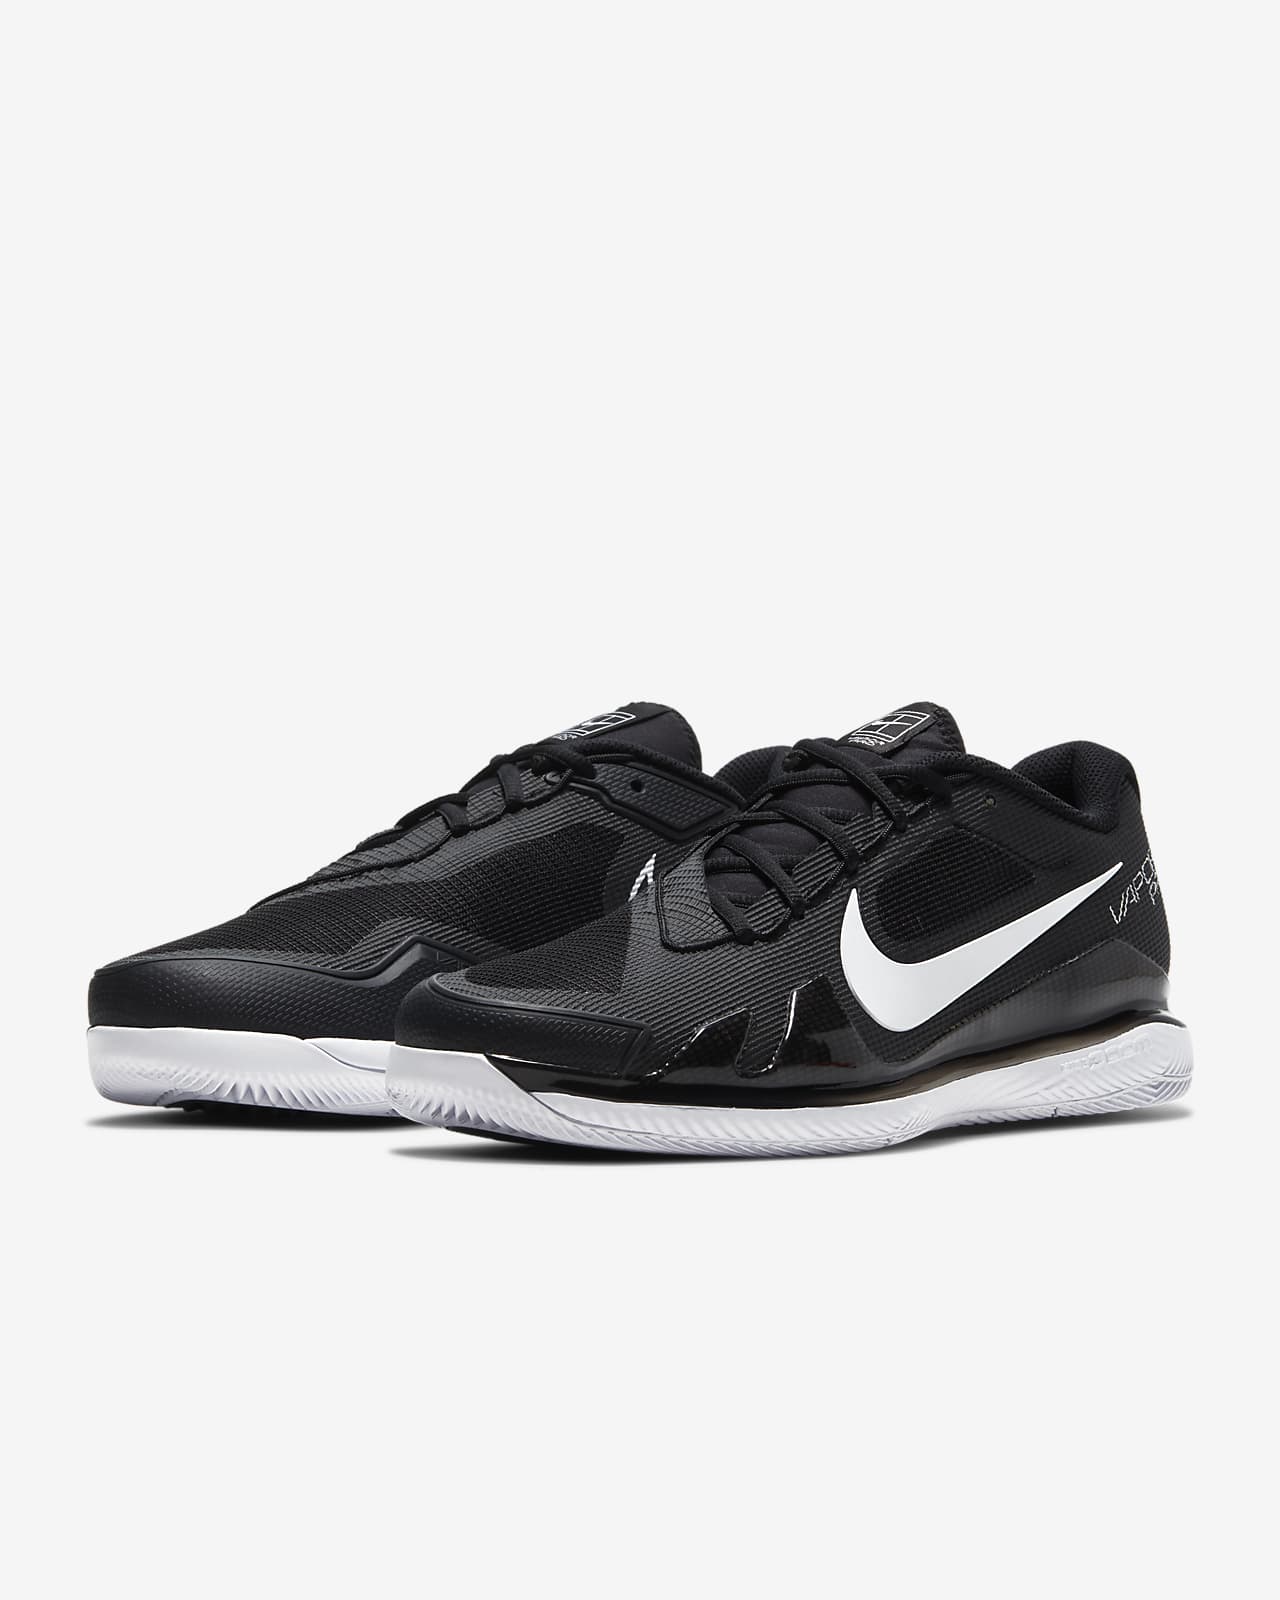 NikeCourt Air Zoom Vapor Pro Men's Hard Court Tennis Shoes